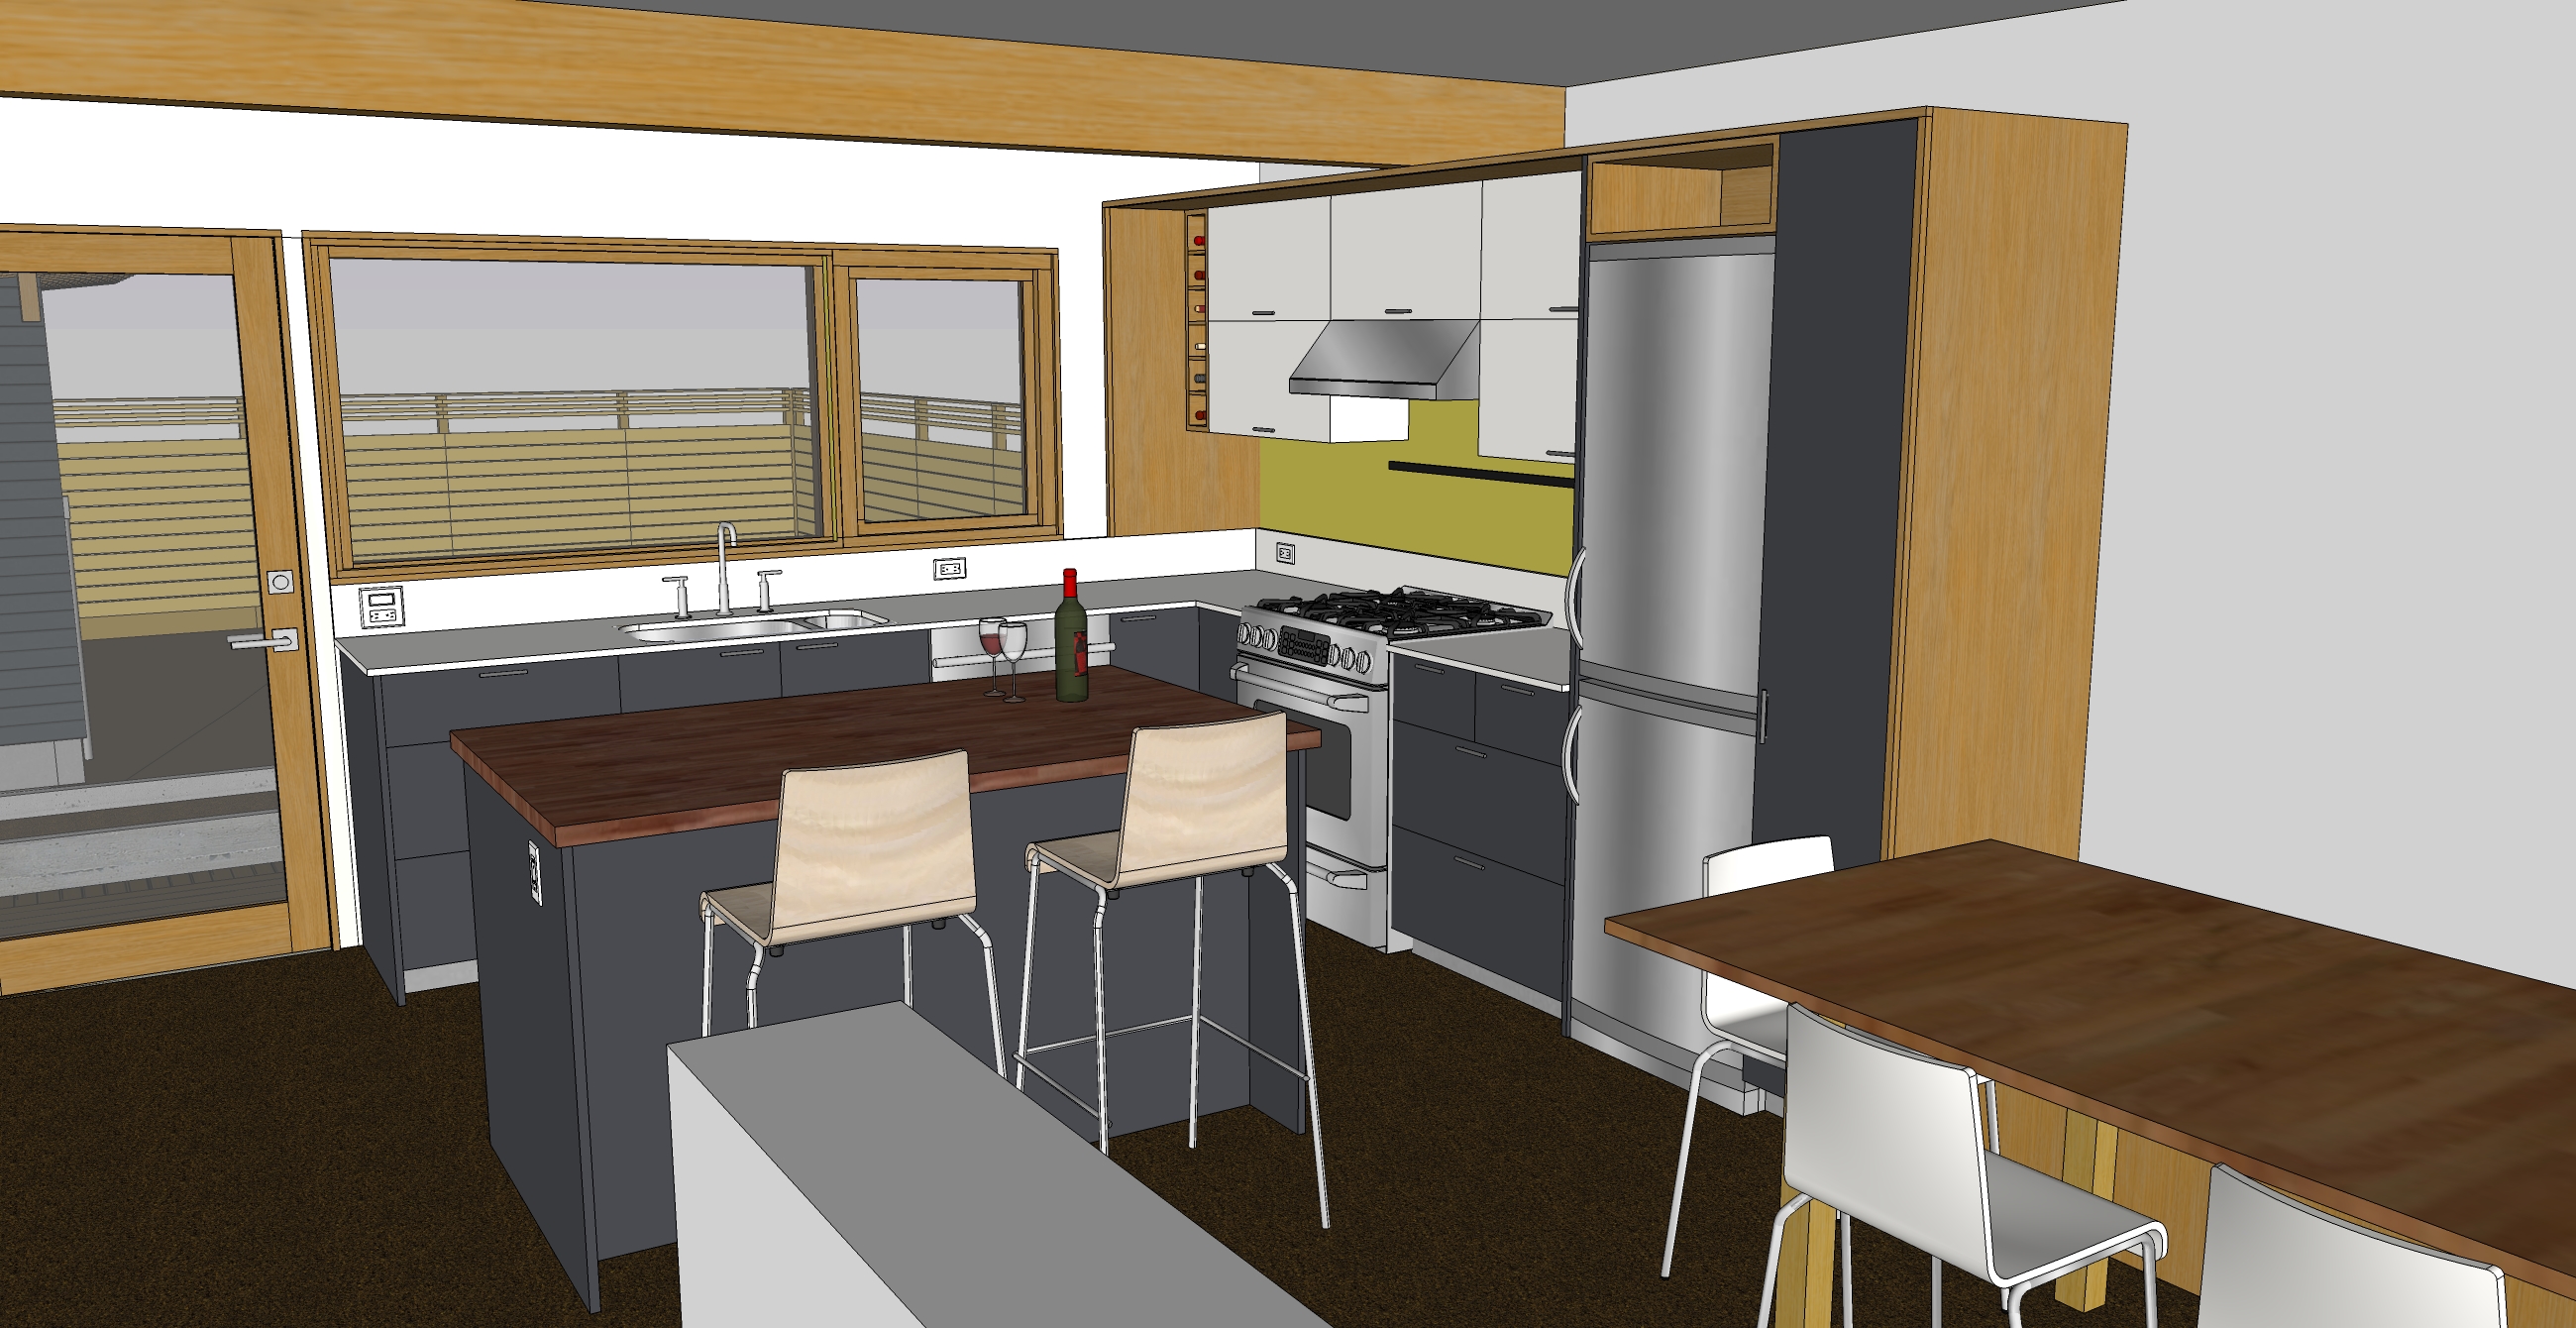 sketchup kitchen design tutorial